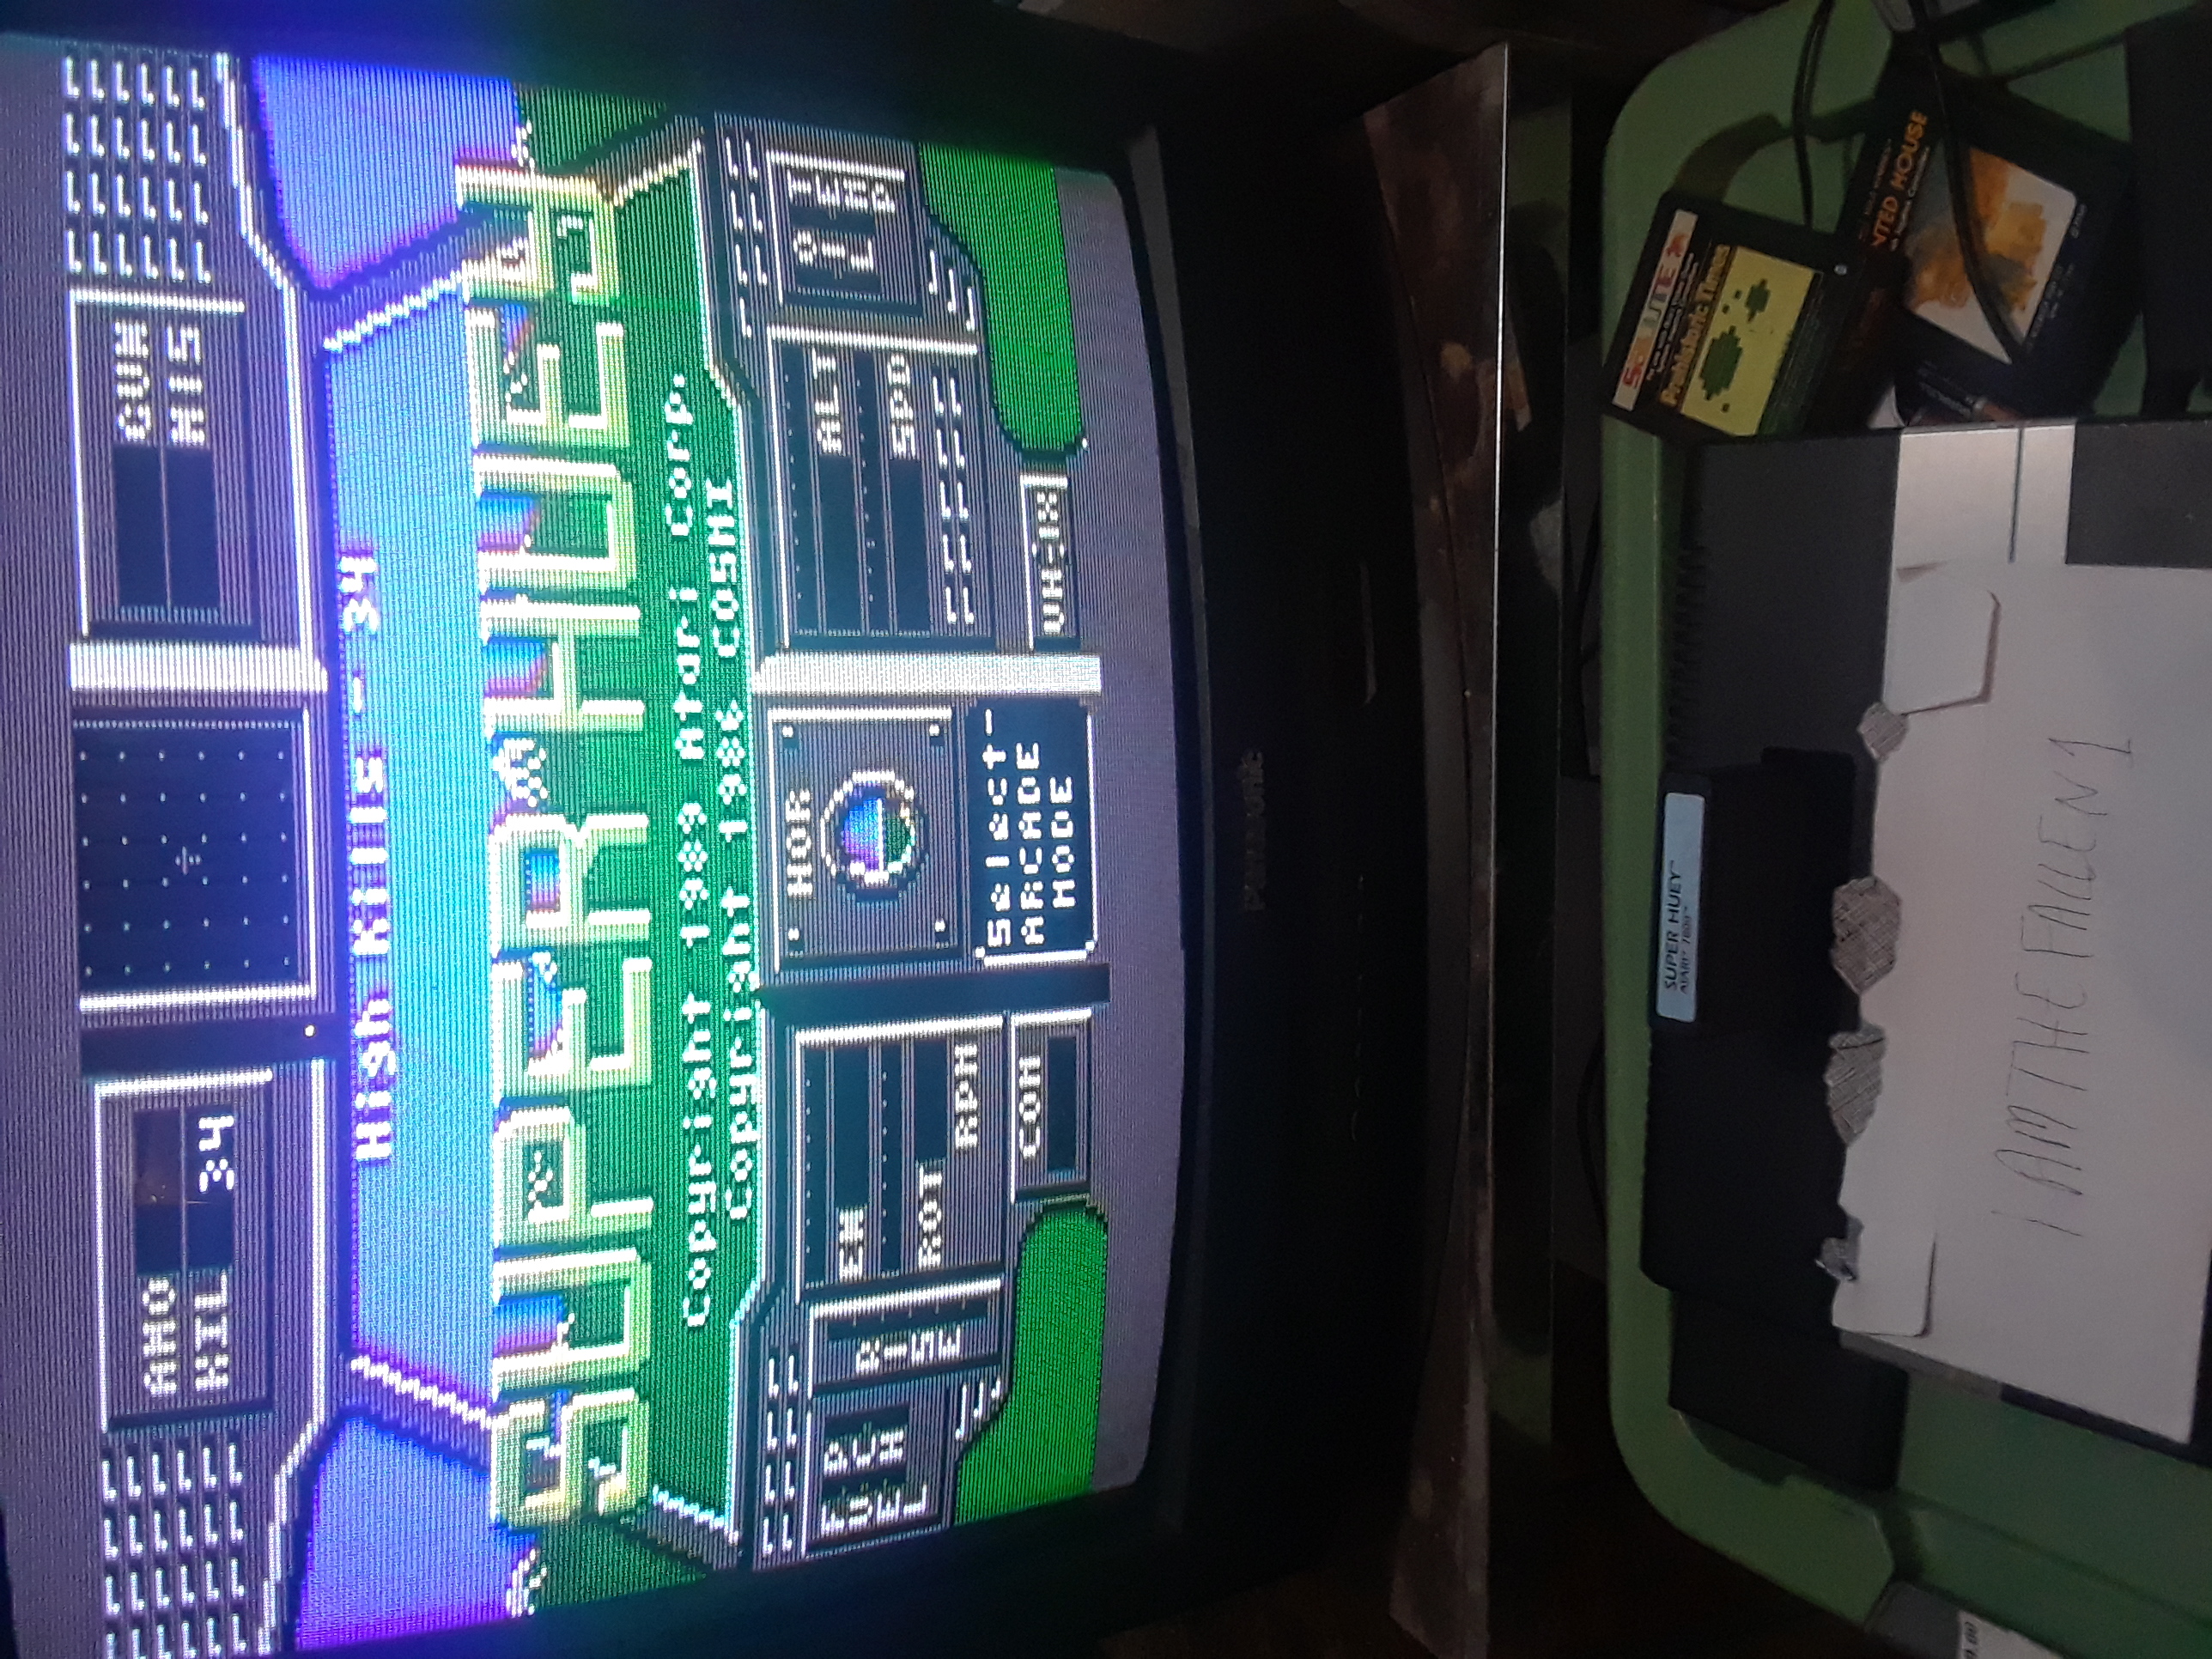 iamthefallen1: Super Huey: Arcade Mode [Kills] (Atari 7800) 34 points on 2019-04-11 21:17:32